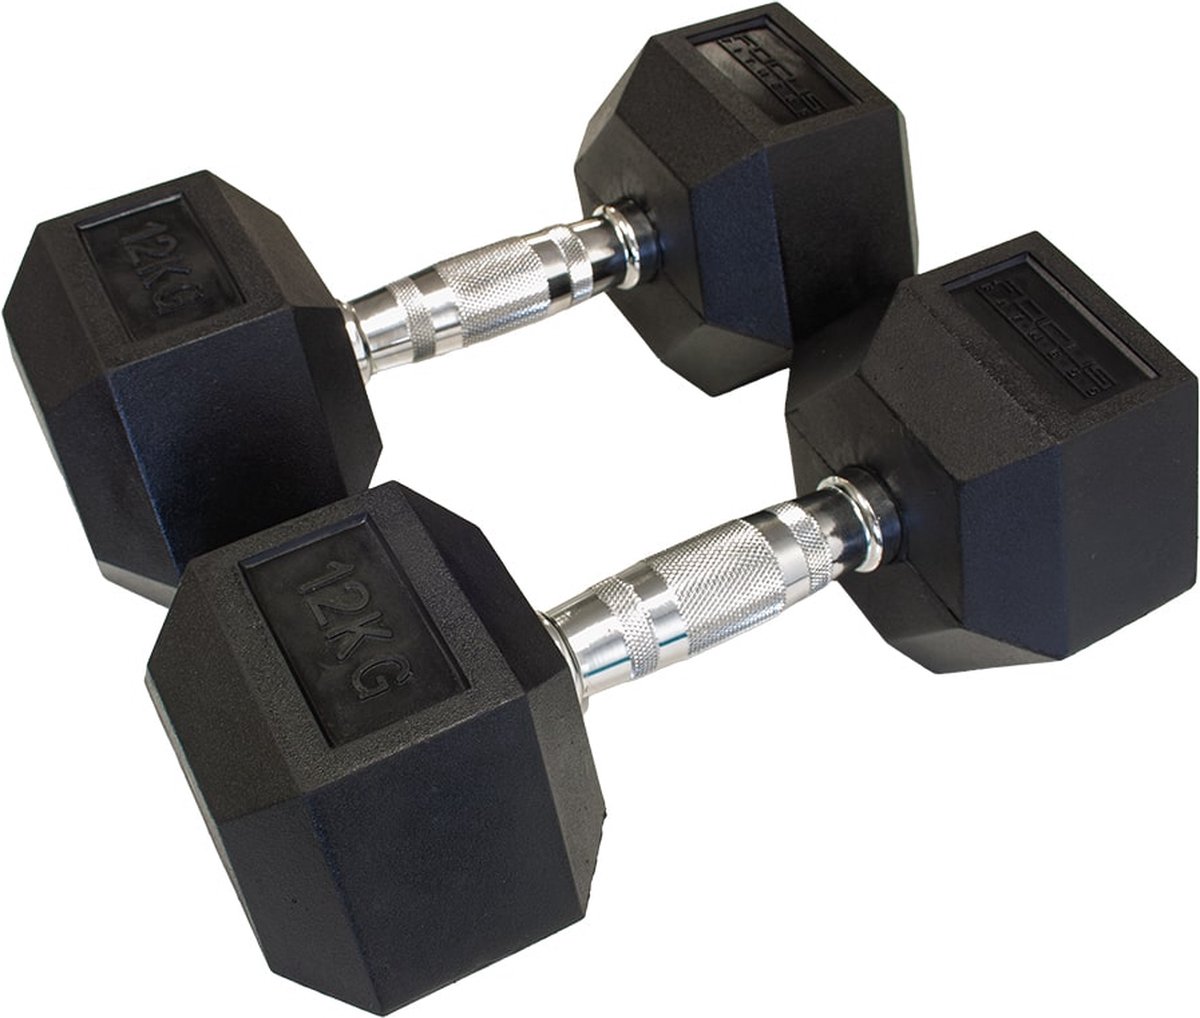 Hexa Dumbbells Focus Fitness - 2x 12 kg